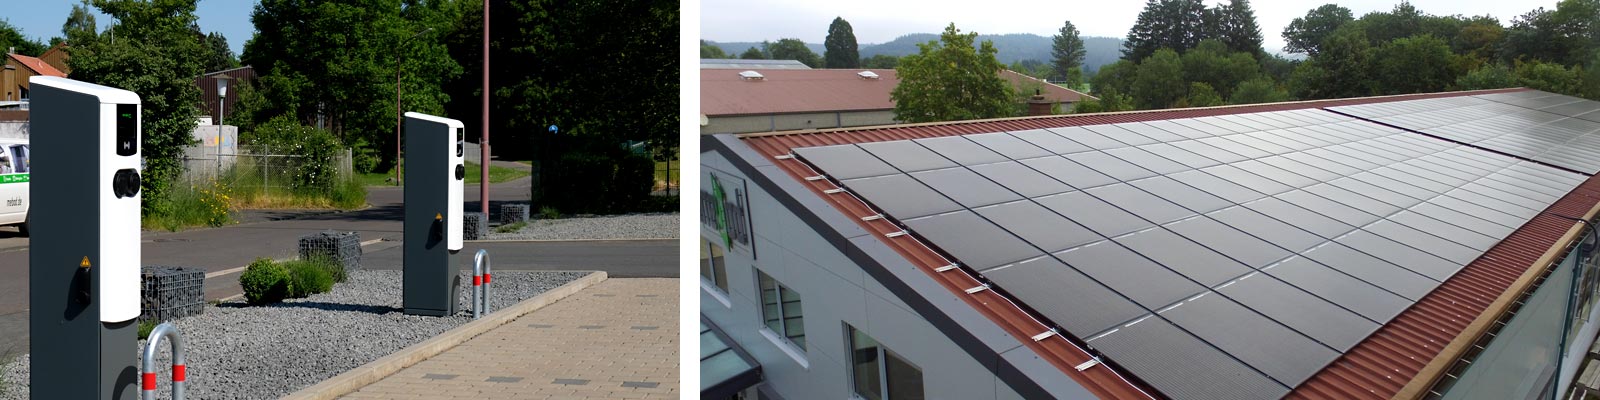 Bild zeigt auf linken Seite zwei Ladesäulen für E-Autos auf dem Parkplatz der mebod und auf der rechten Seite einen Ausschnitt der Photovoltaikanlage auf dem Dach der mebod